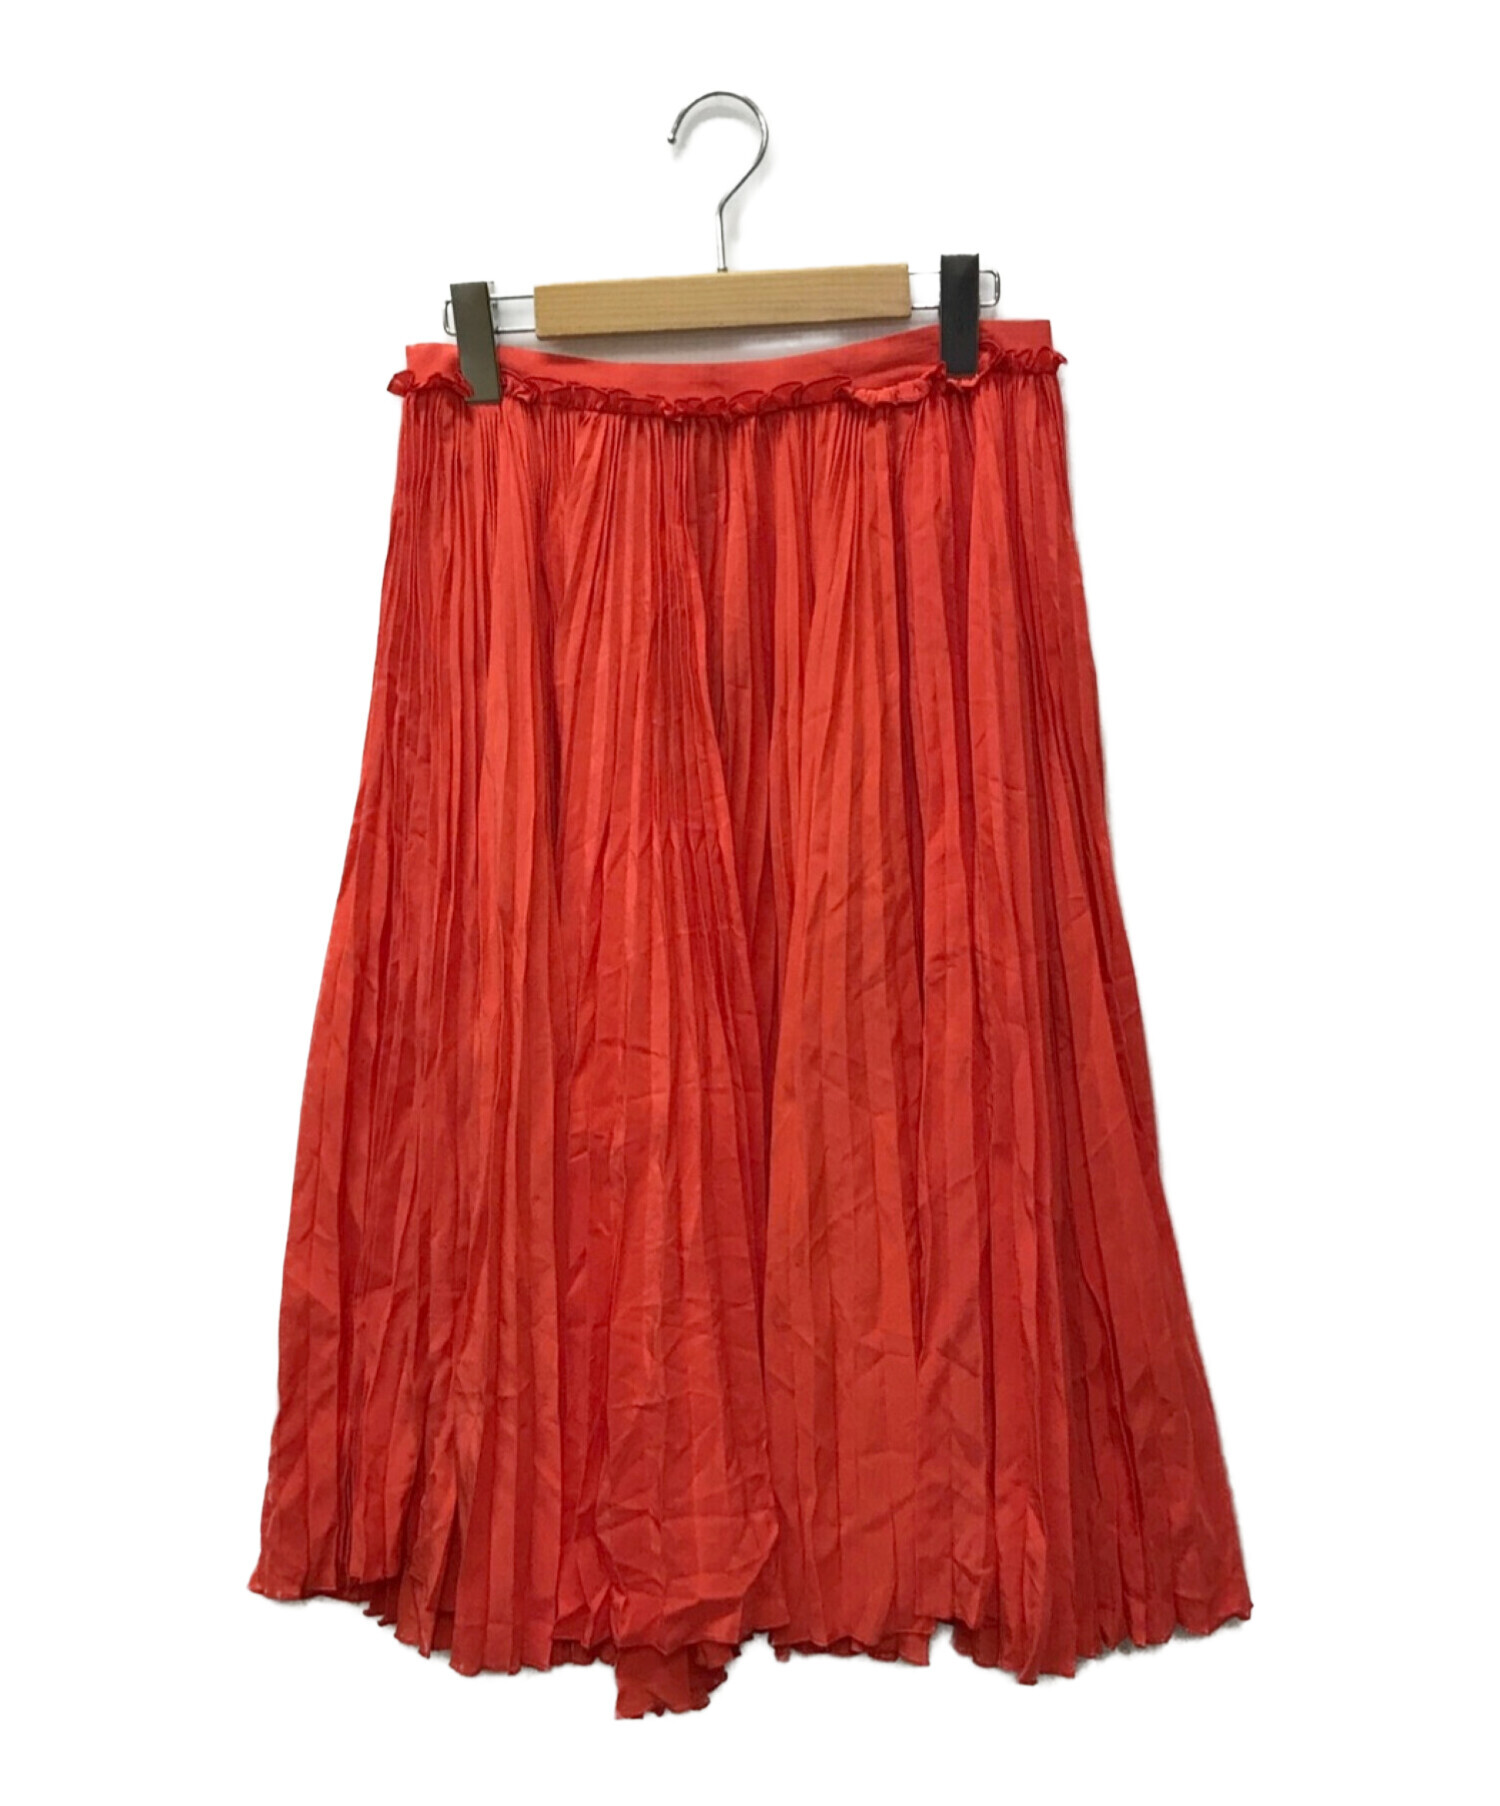 ROCHAS (ロシャス) スカート レッド サイズ:40 未使用品